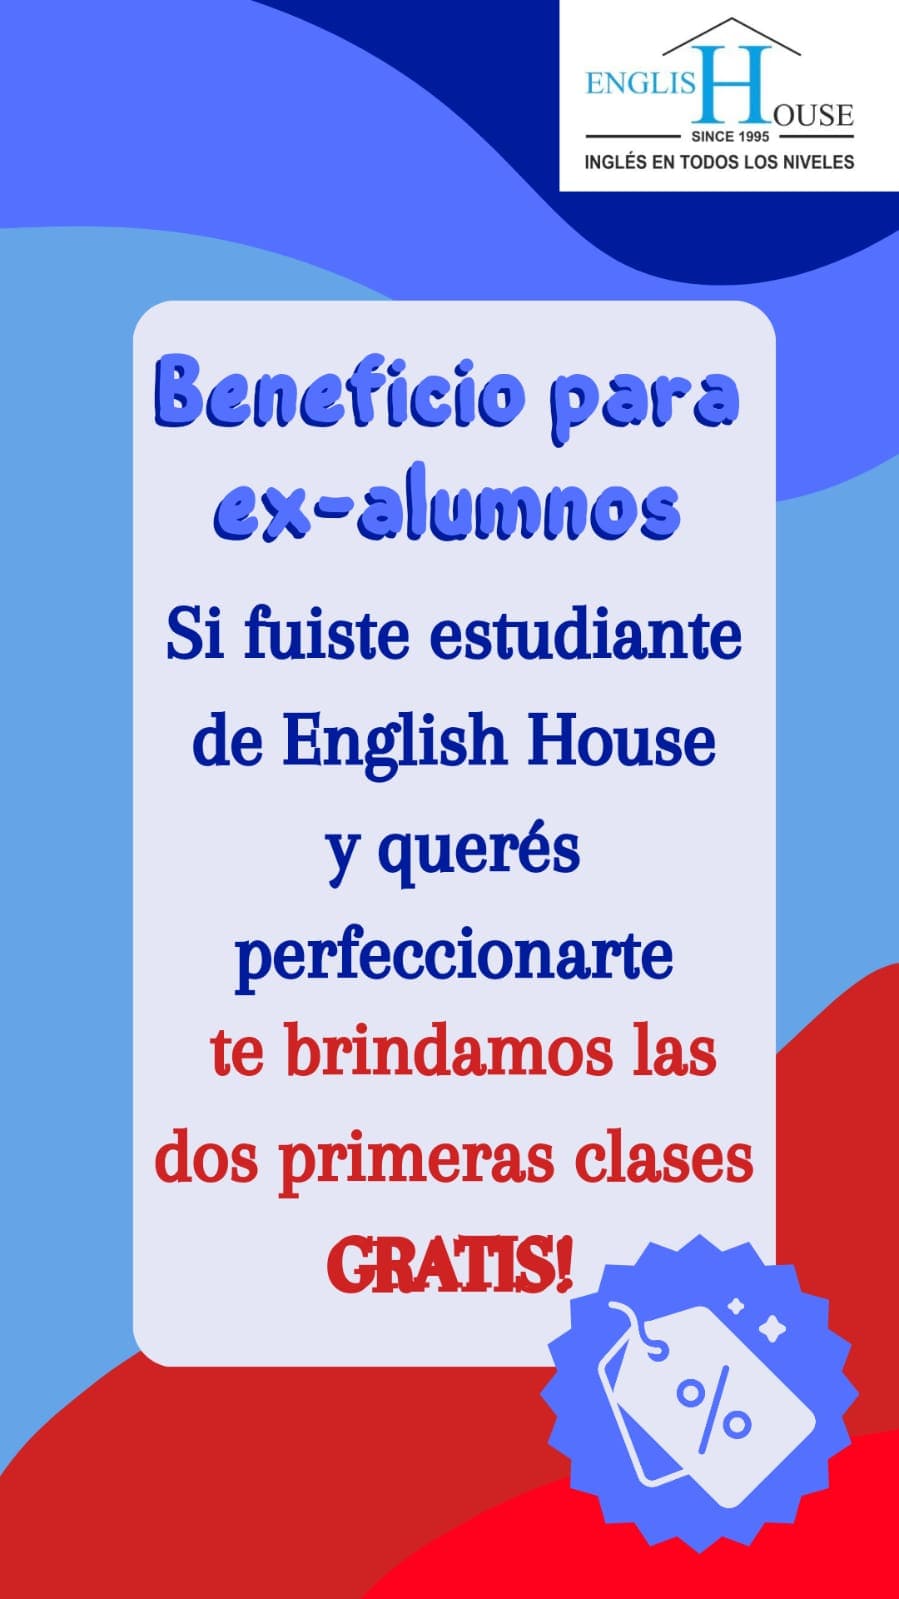 ENGLISH HOUSE - Instituto de Inglés en Villa Tesei